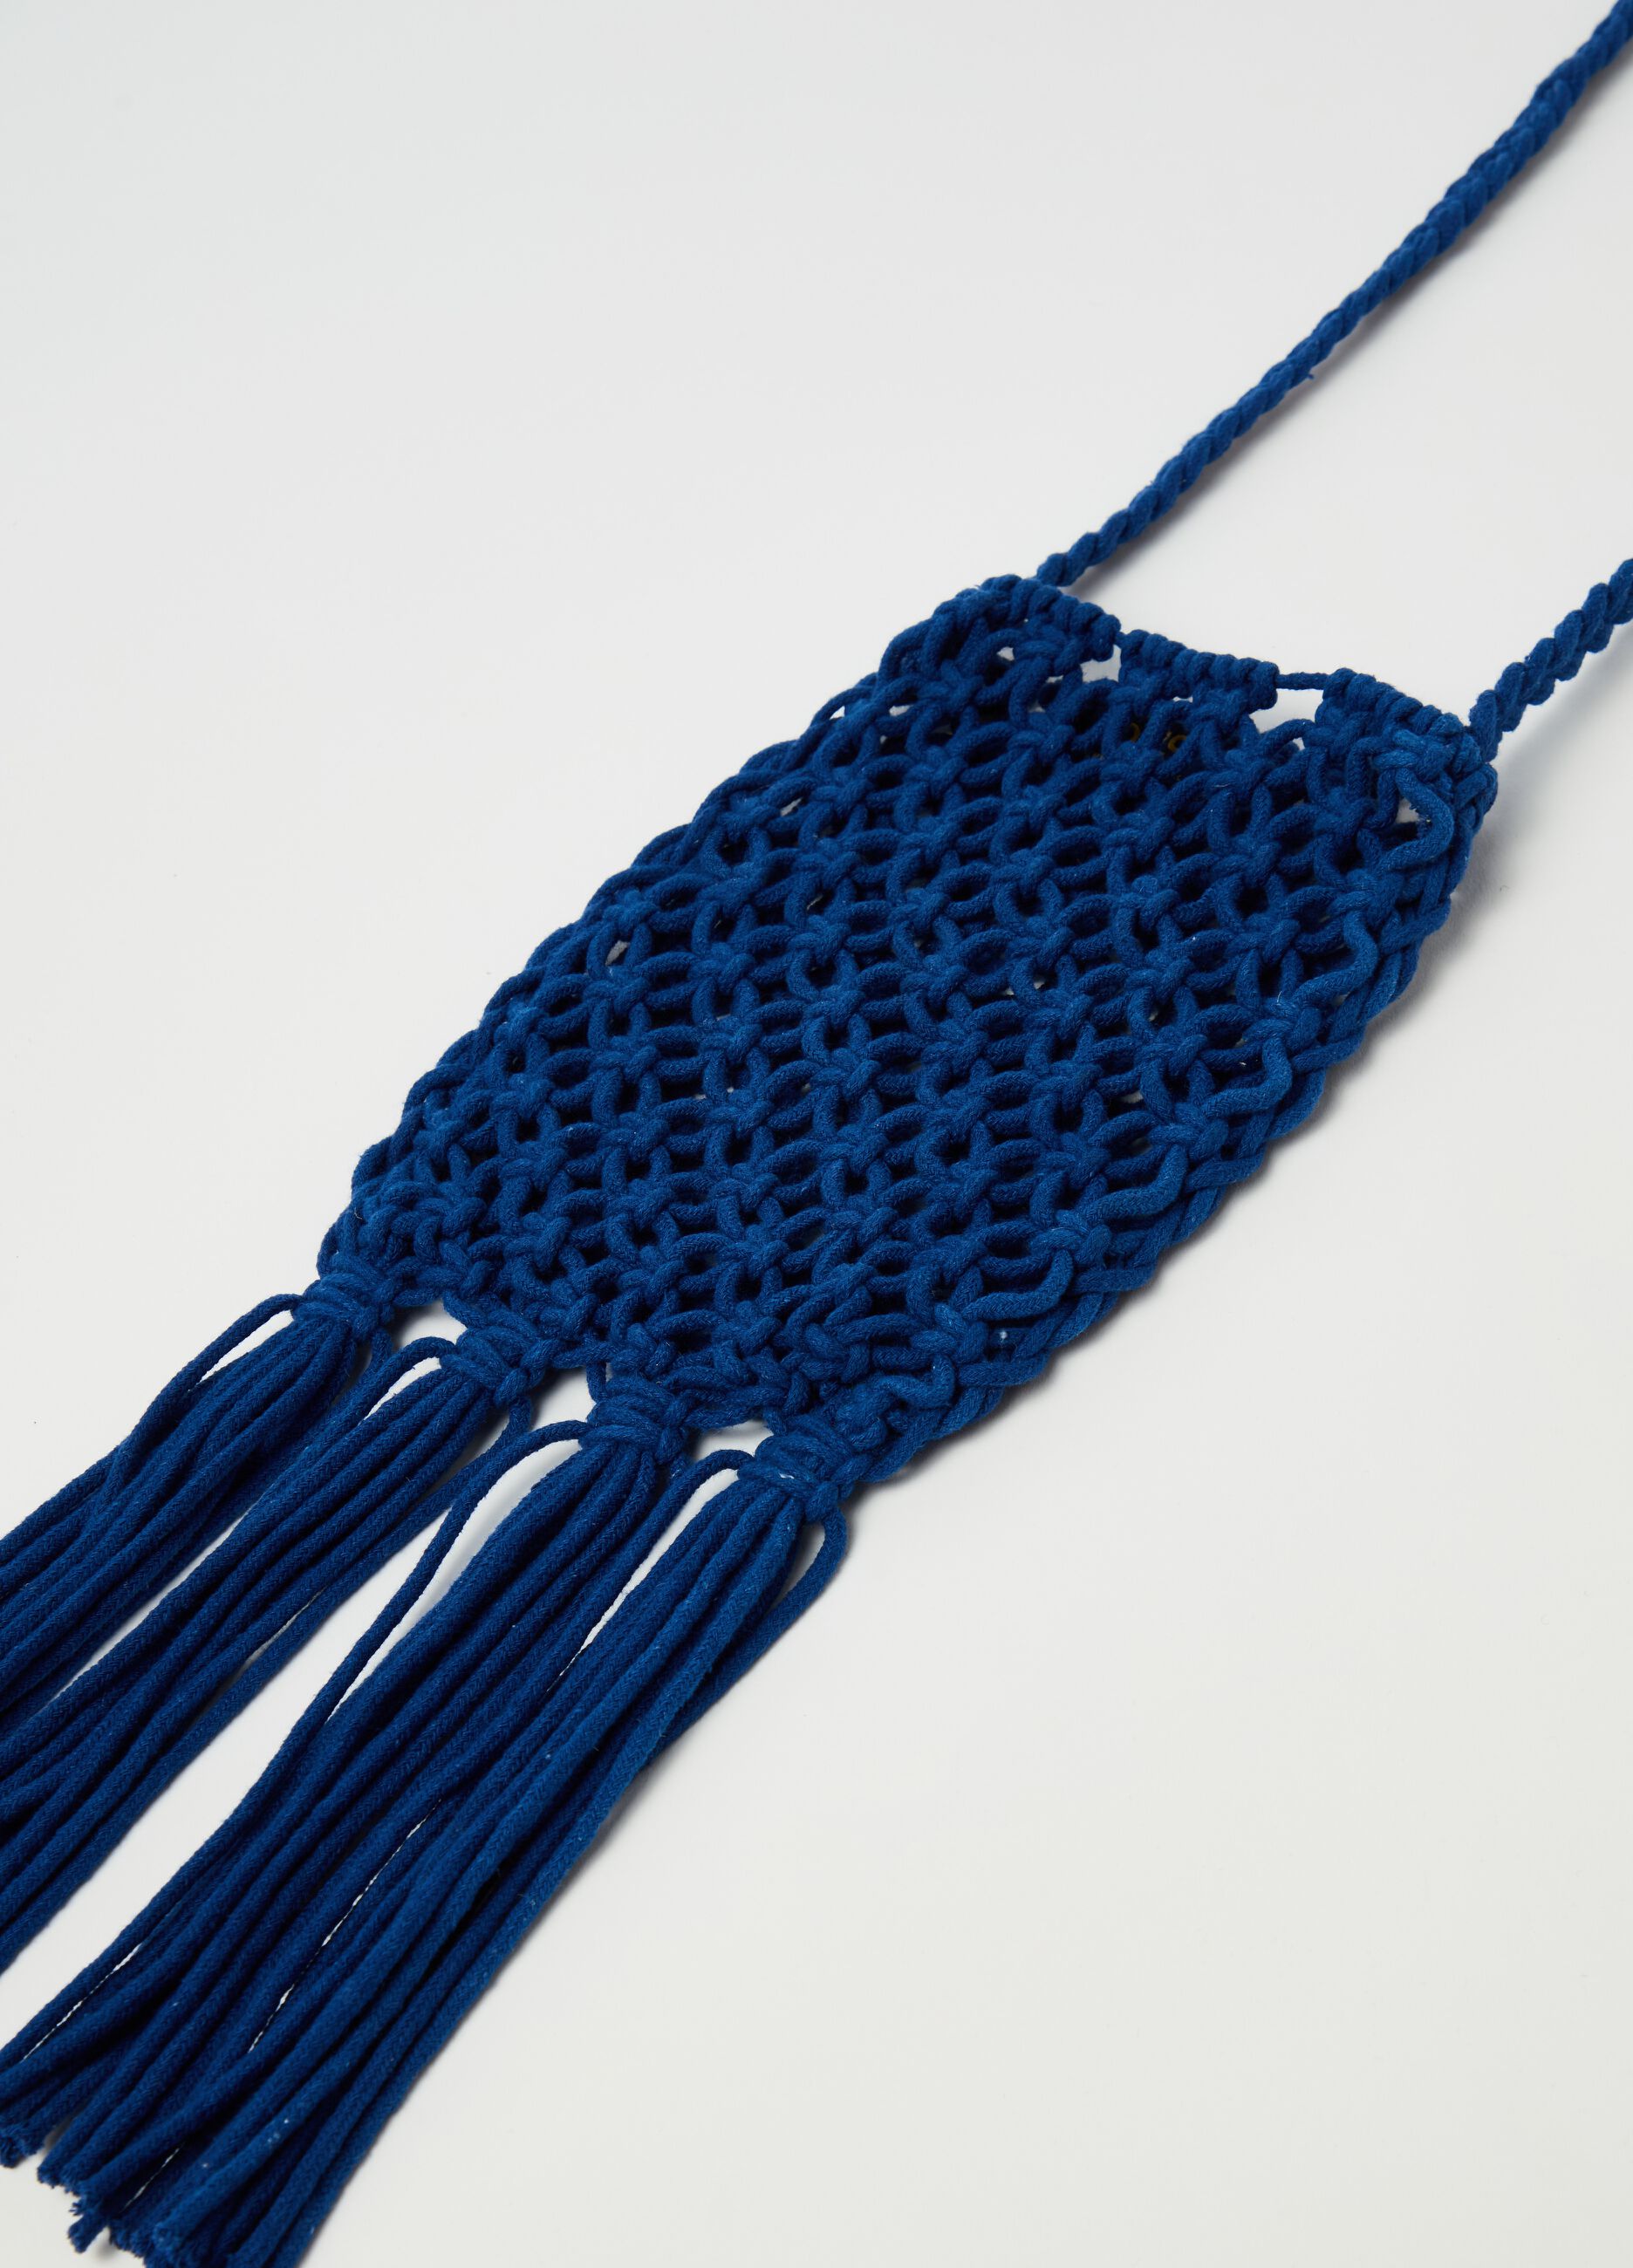 Crochet cotton bag